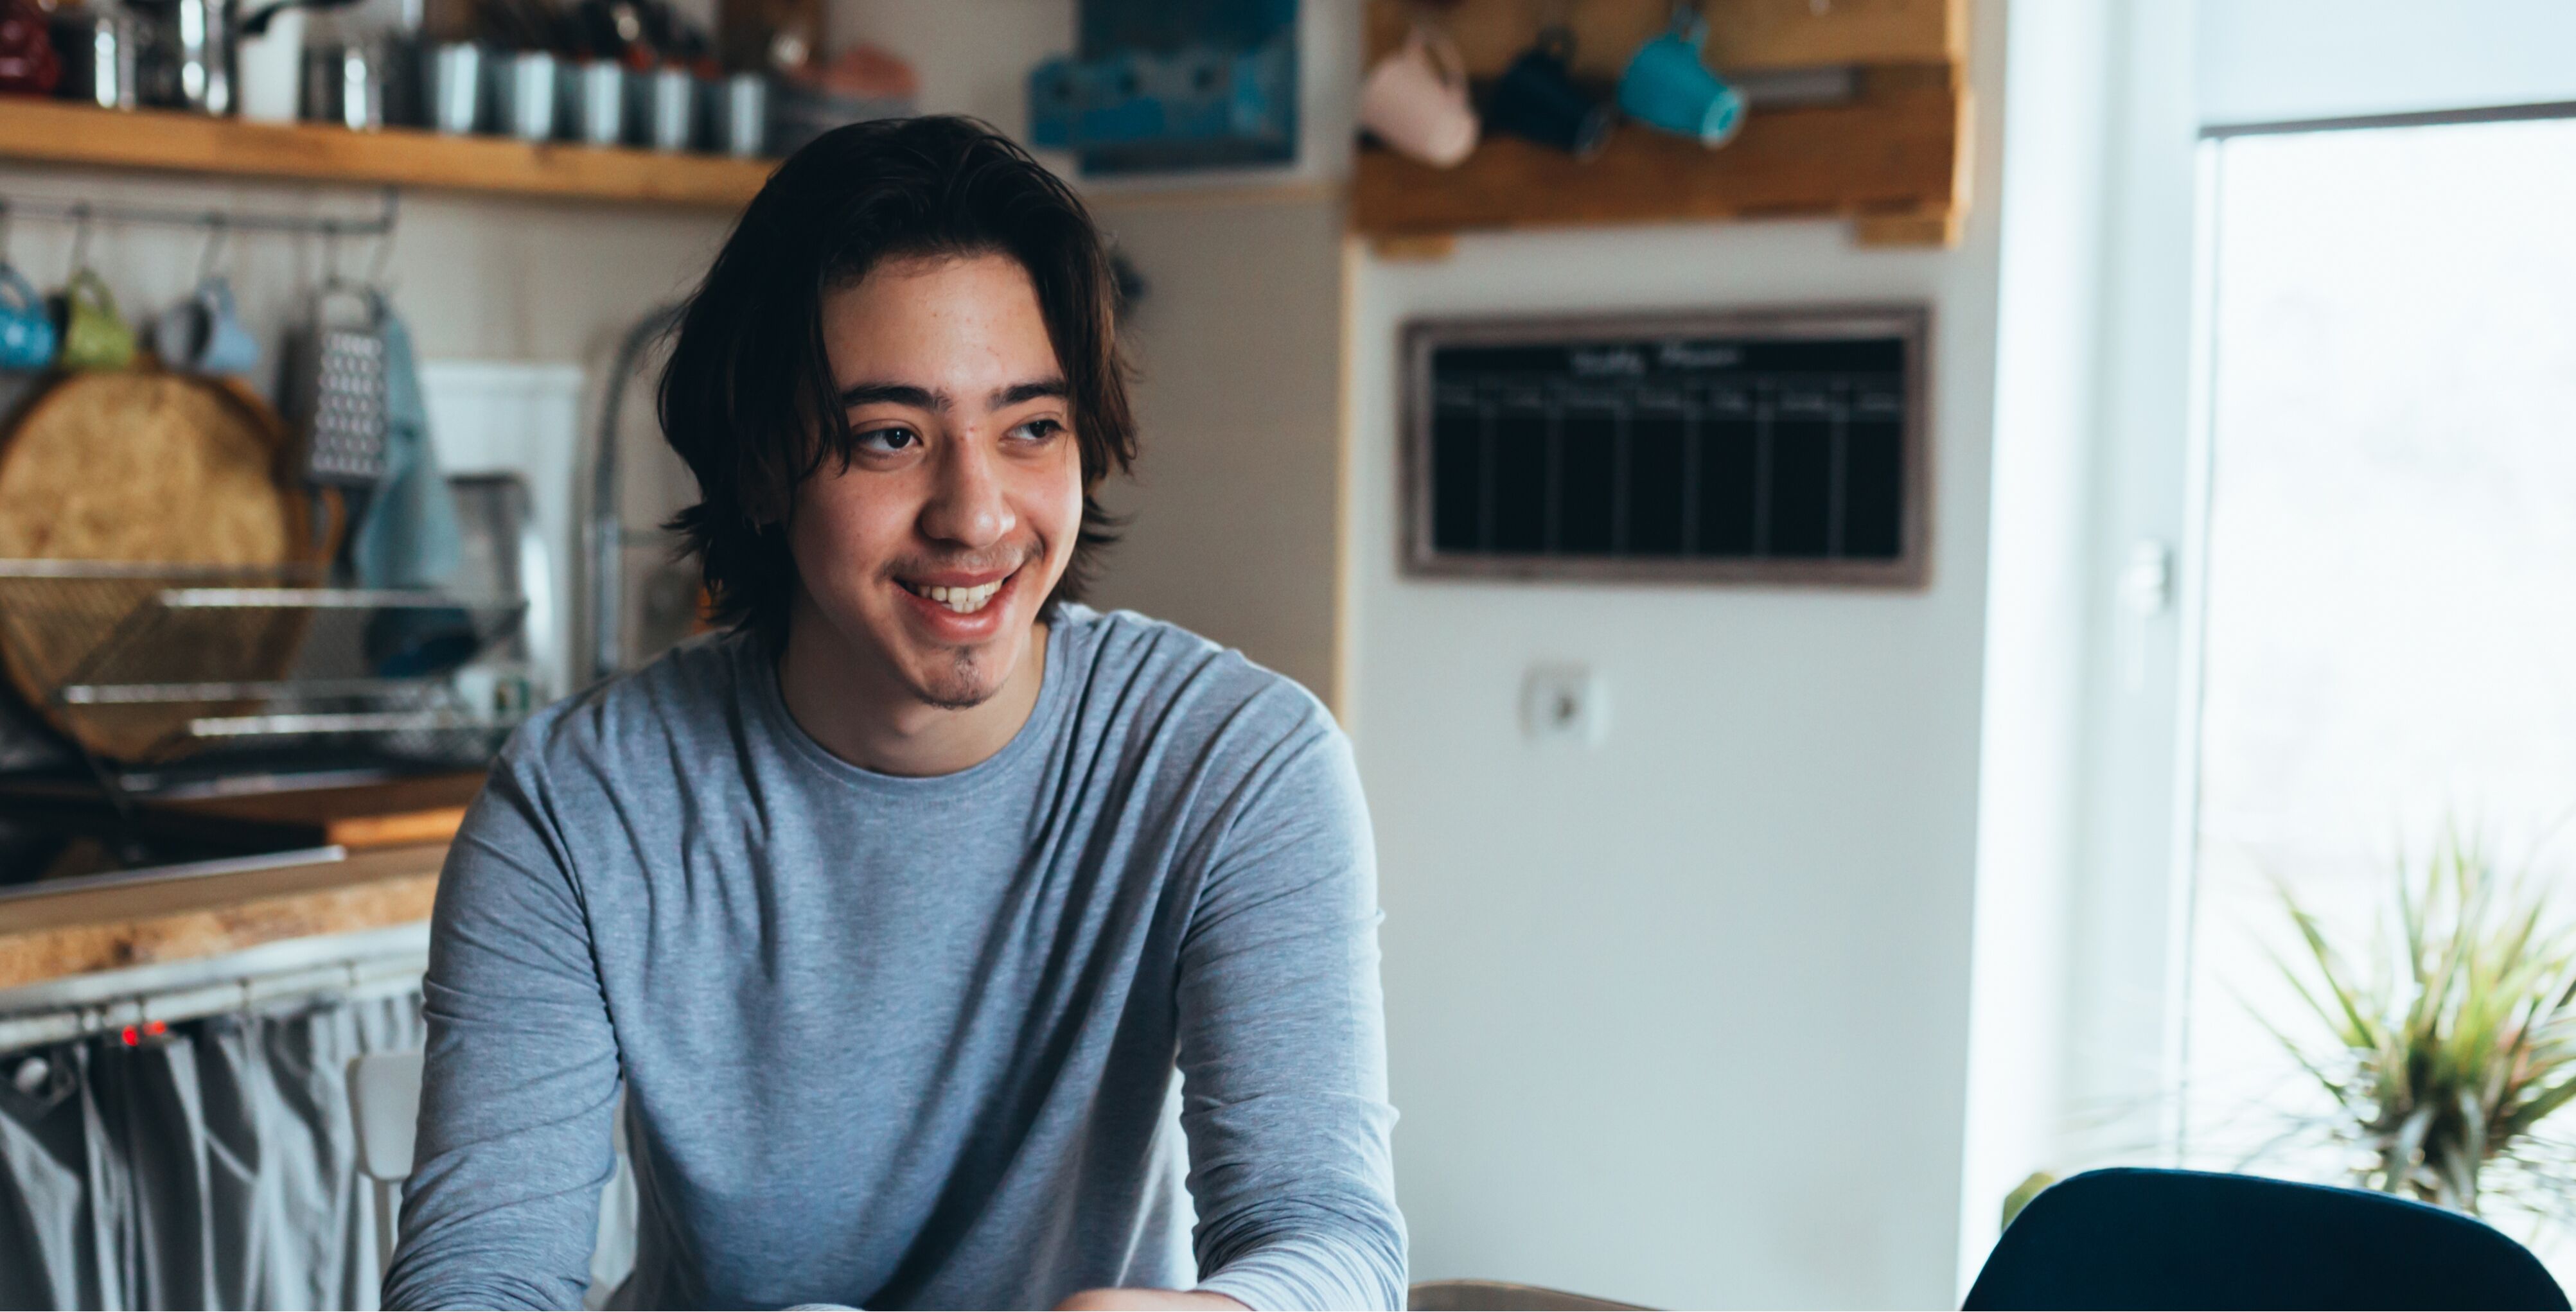 Teenage boy sitting in kitchen smiling